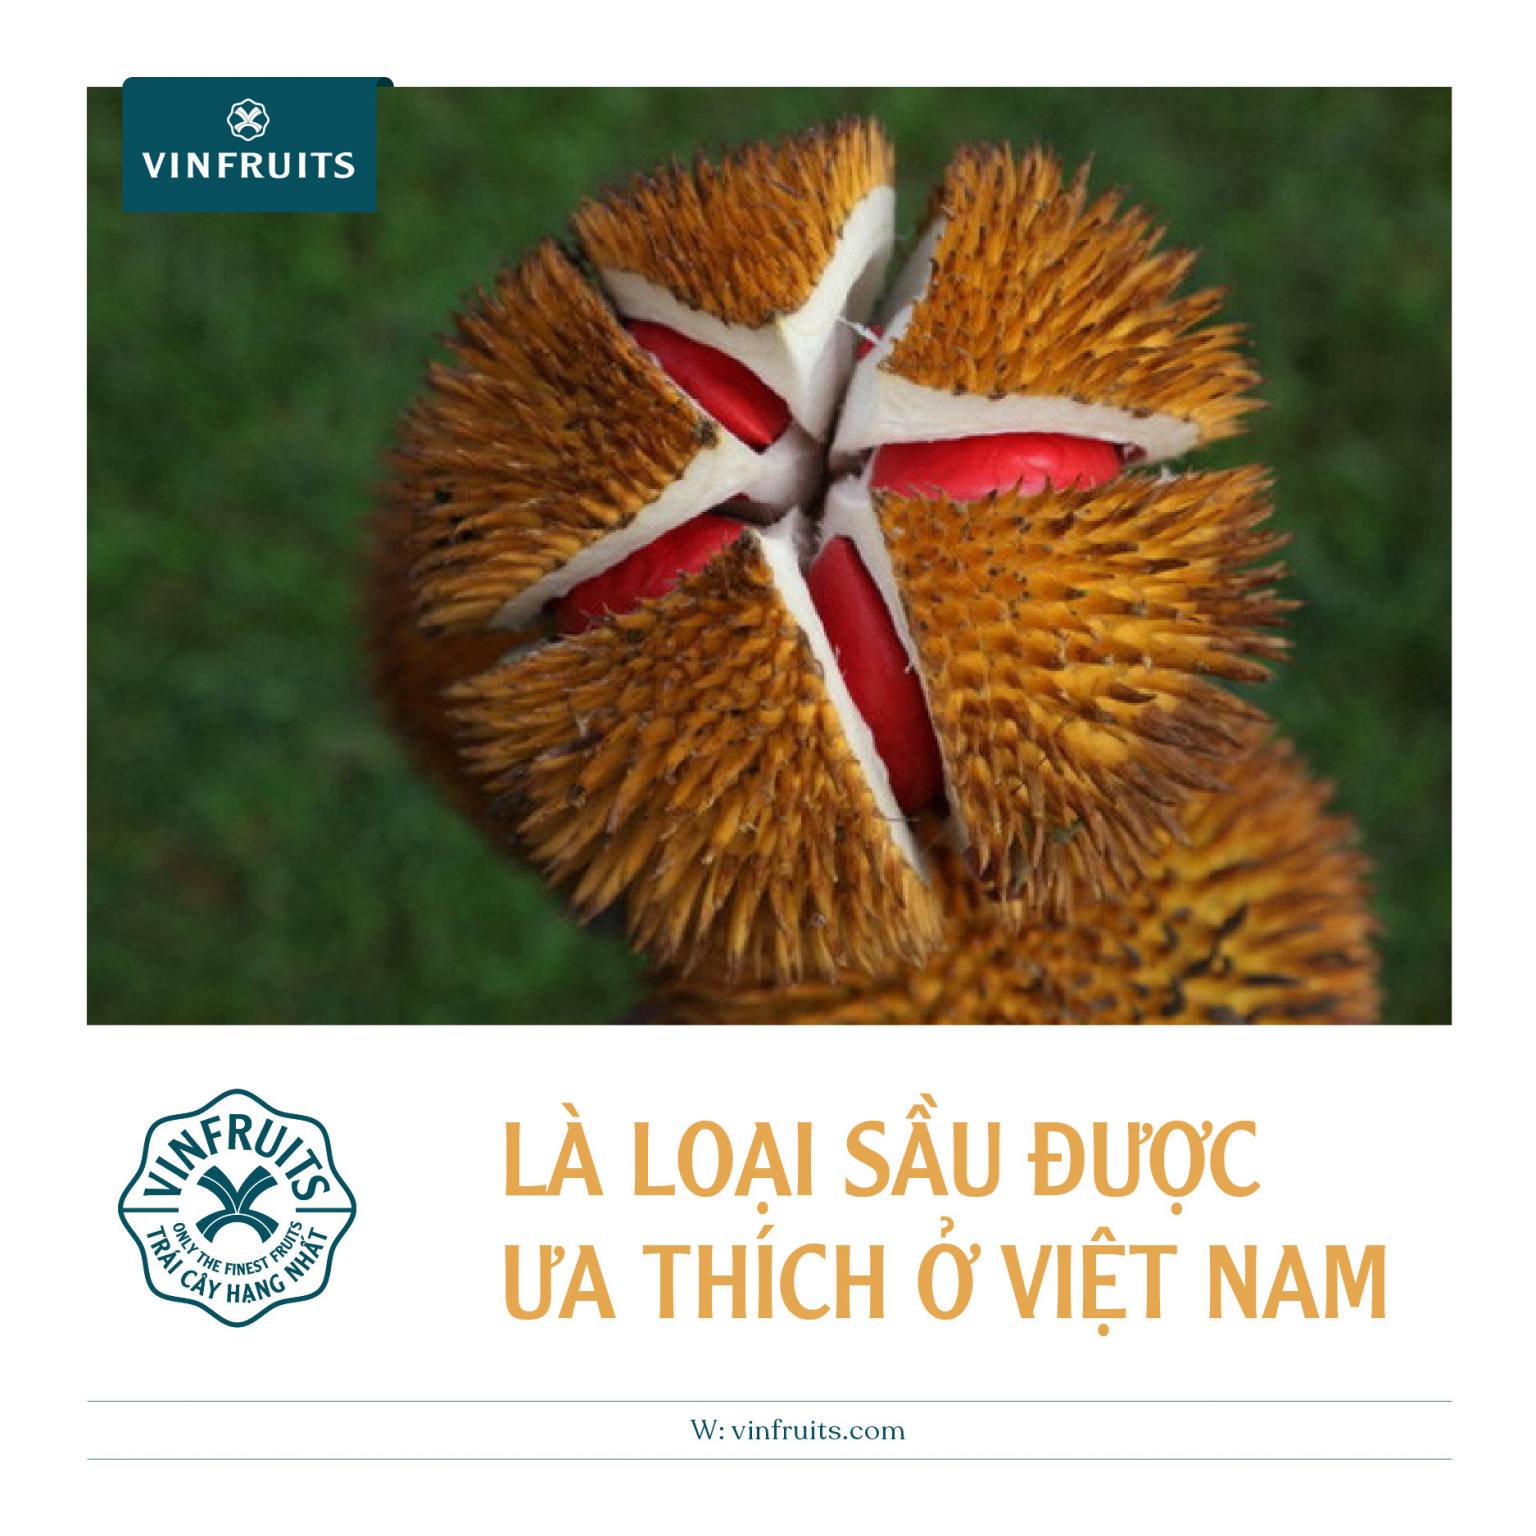 Sầu riêng ruột đỏ được ưa thích & tìm kiếm nhiều ở Việt Nam